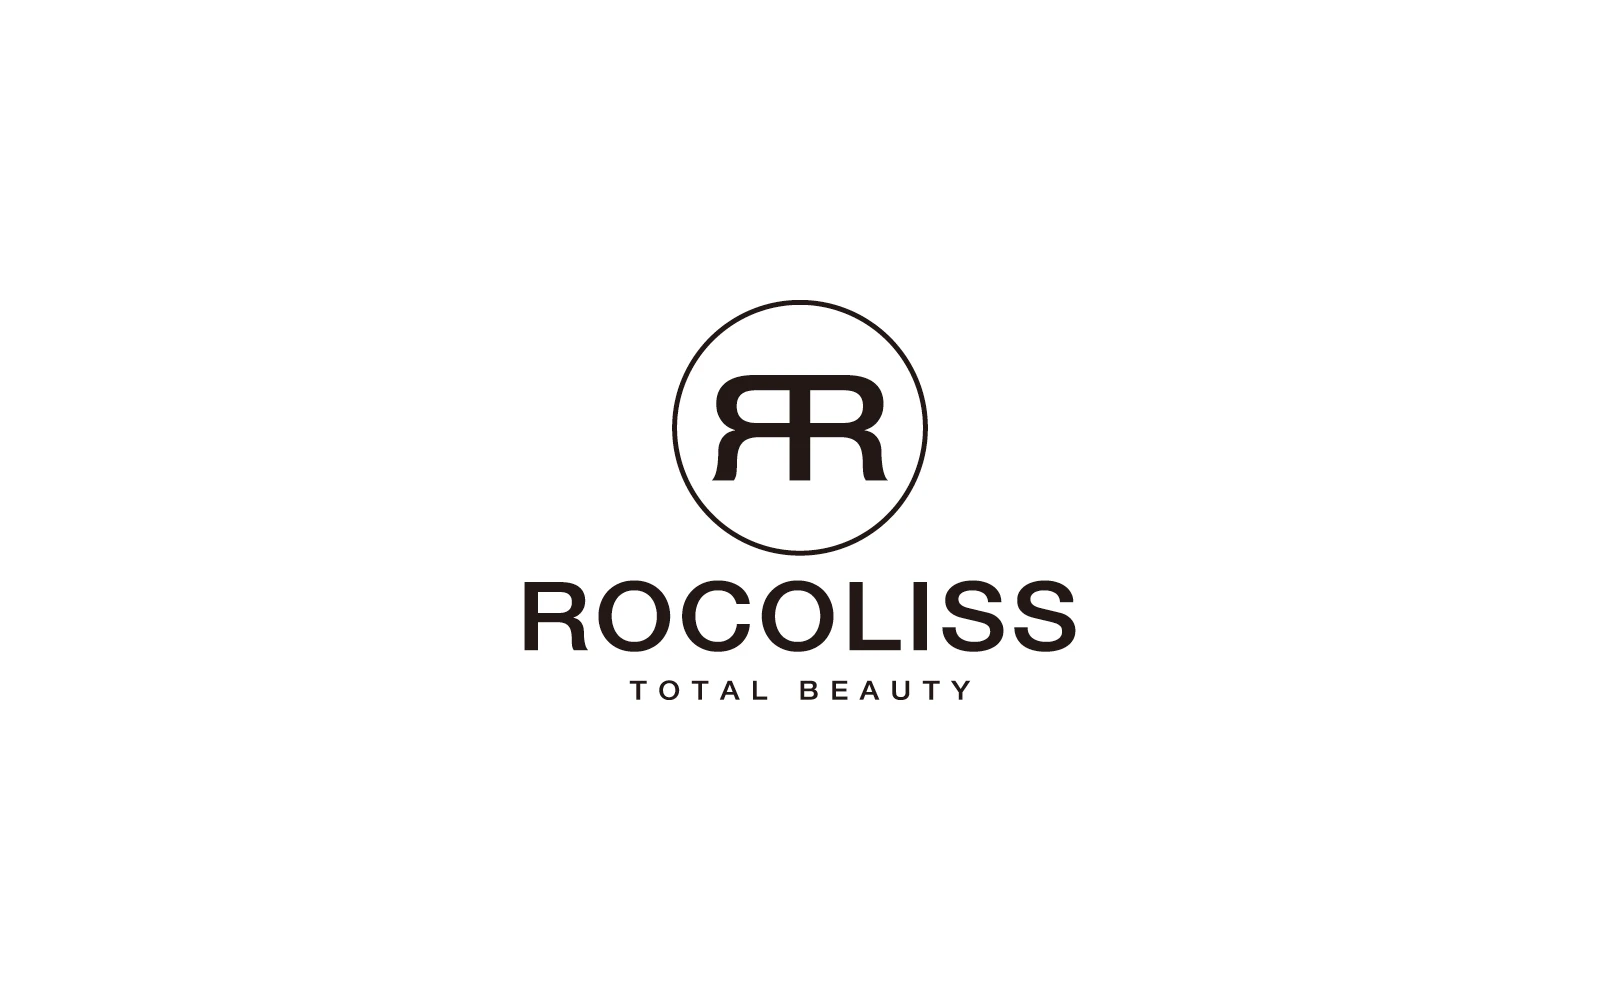 ROCOLISS TOTAL BEAUTY / ブランドロゴデザイン